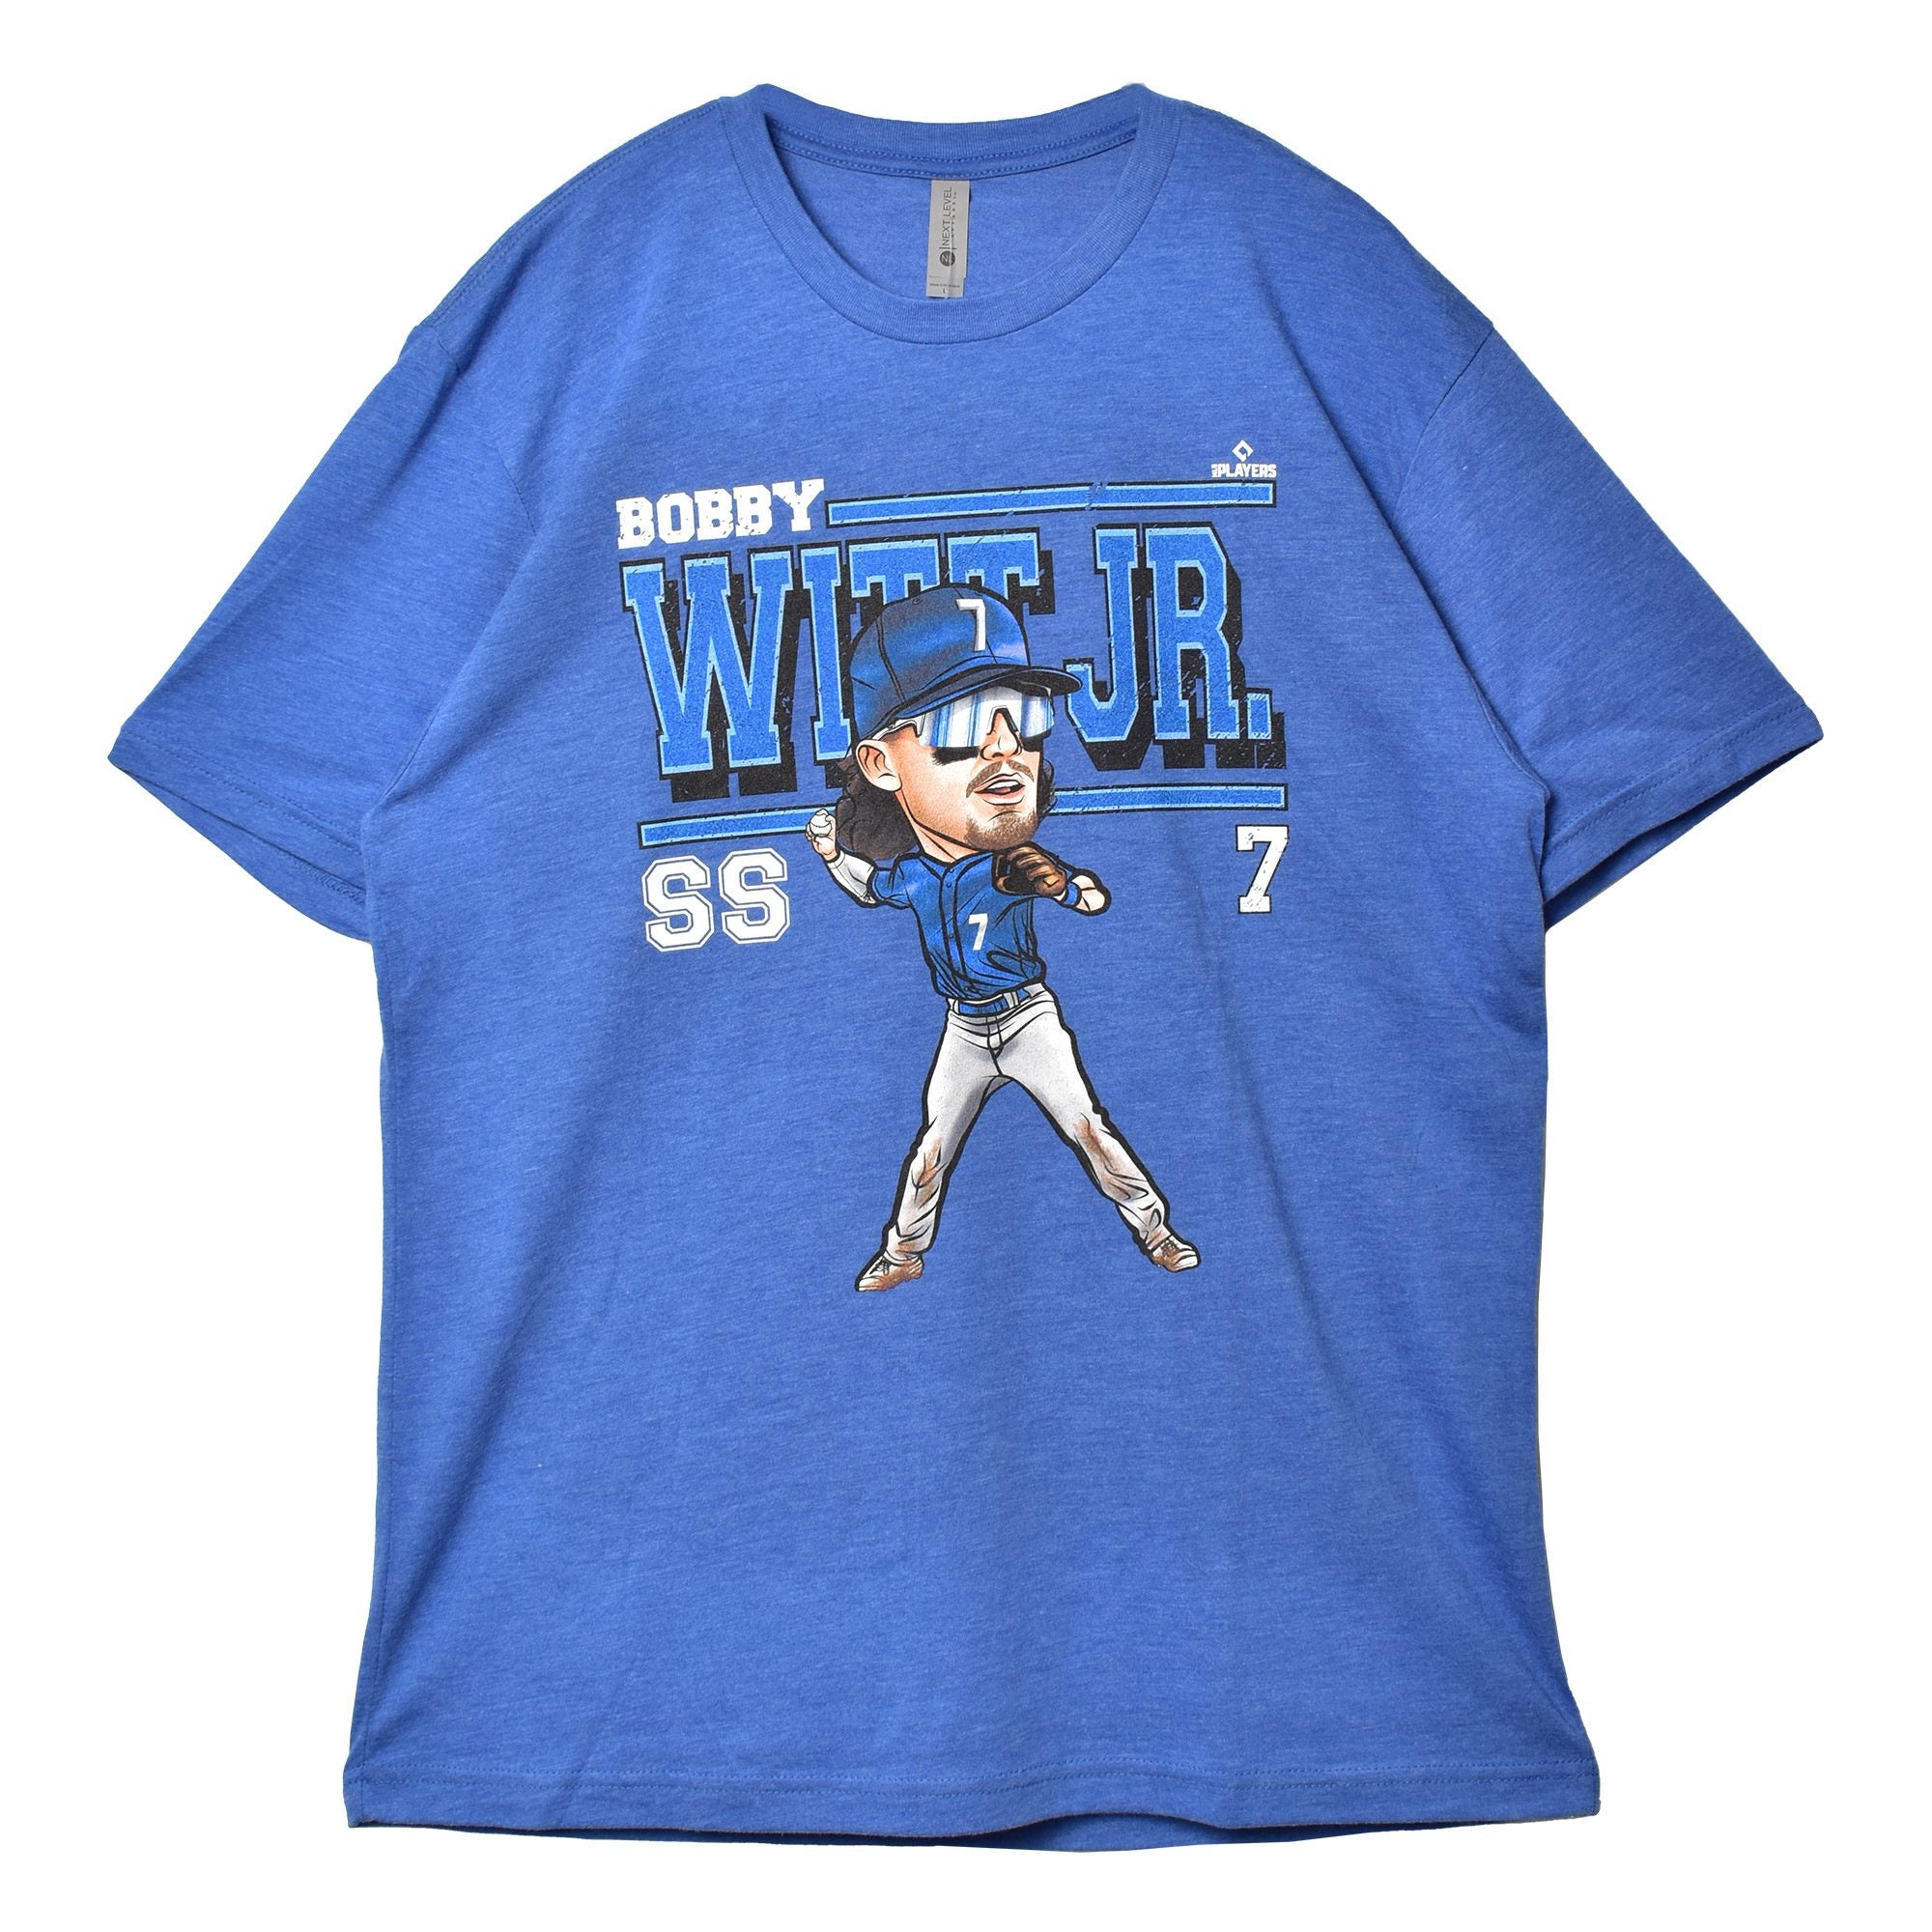 ボビー・ウィット・ジュニア カンザス シティ カートゥーン WHT 0002-048-02 半袖Tシャツ 返品無料